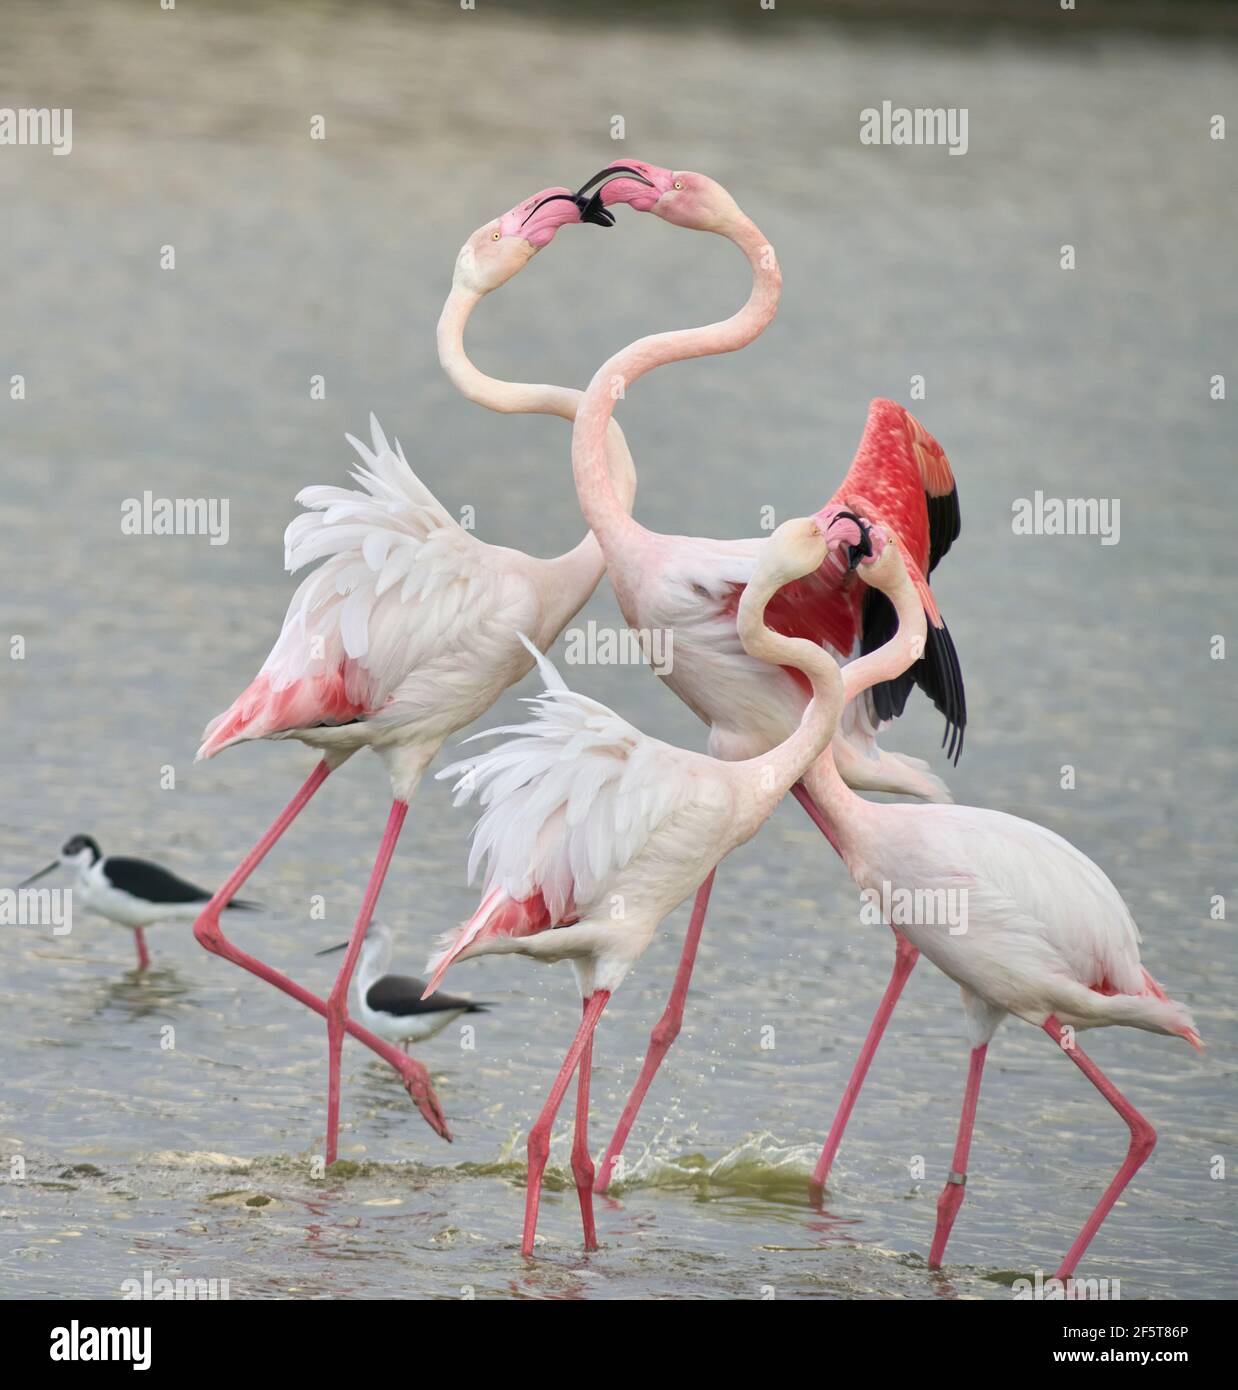 Lotta di fenicotteri comuni o fenicotteri rosa (Flamingo) nella riserva naturale della laguna di Fuente de Piedra a Malaga. Andalusia, Spagna Foto Stock